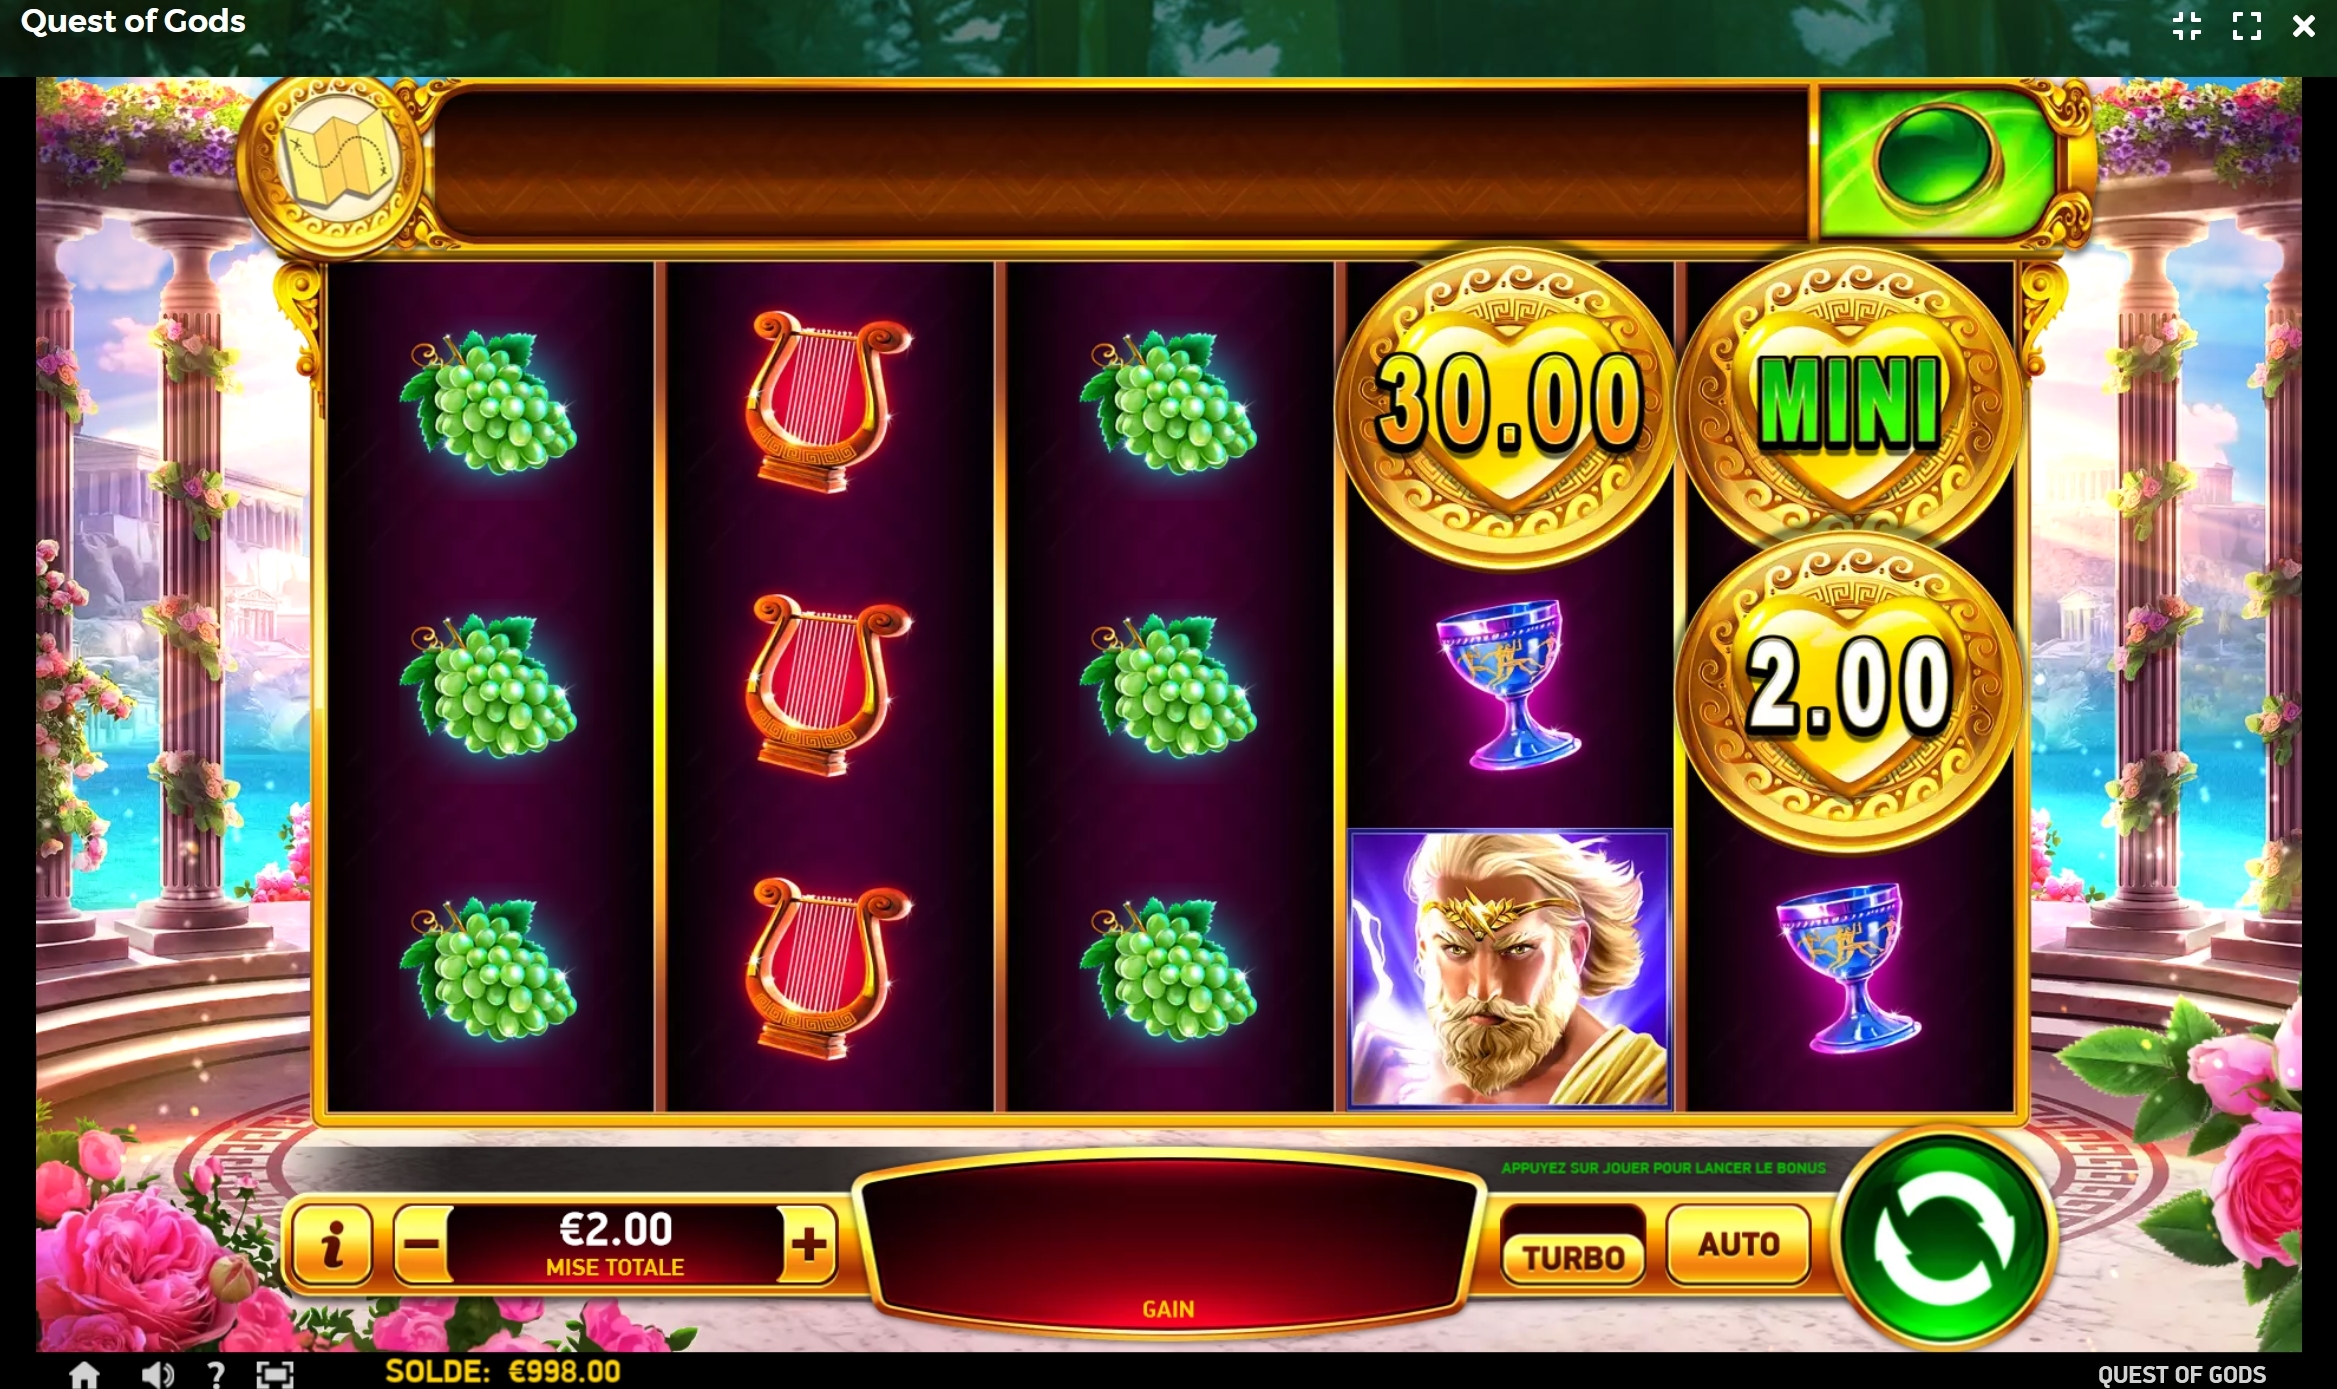 Le Quest of Gods sont l'un des meilleurs jeux de casino Extra à jackpot progressif.